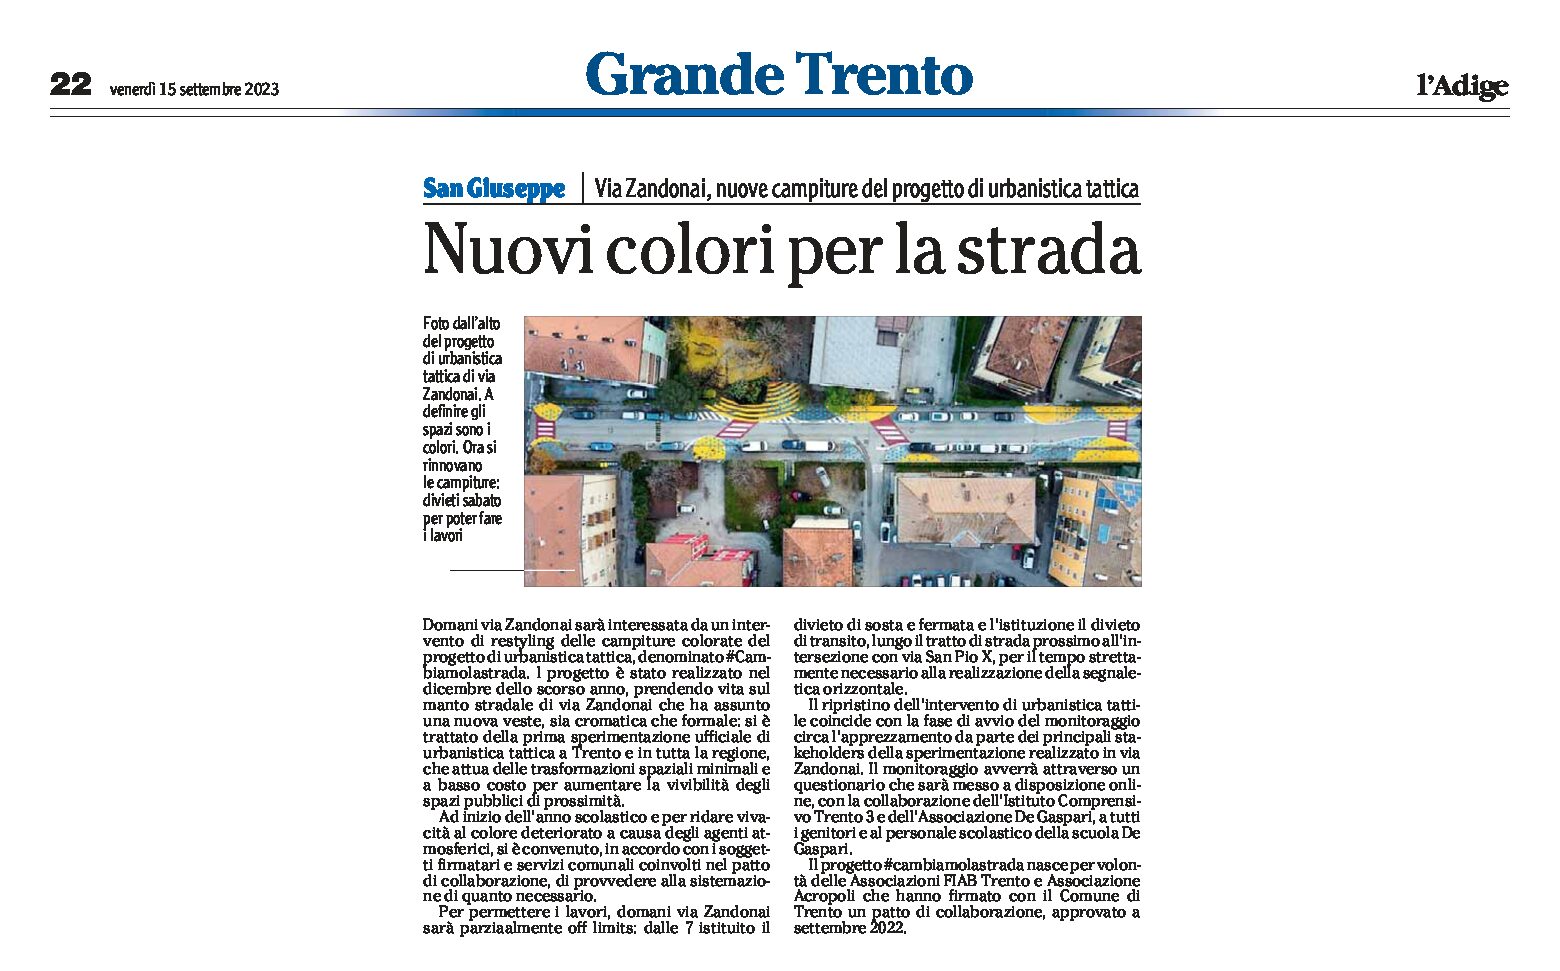 Trento, urbanistica tattica: in via Zandonai nuove campiture del progetto